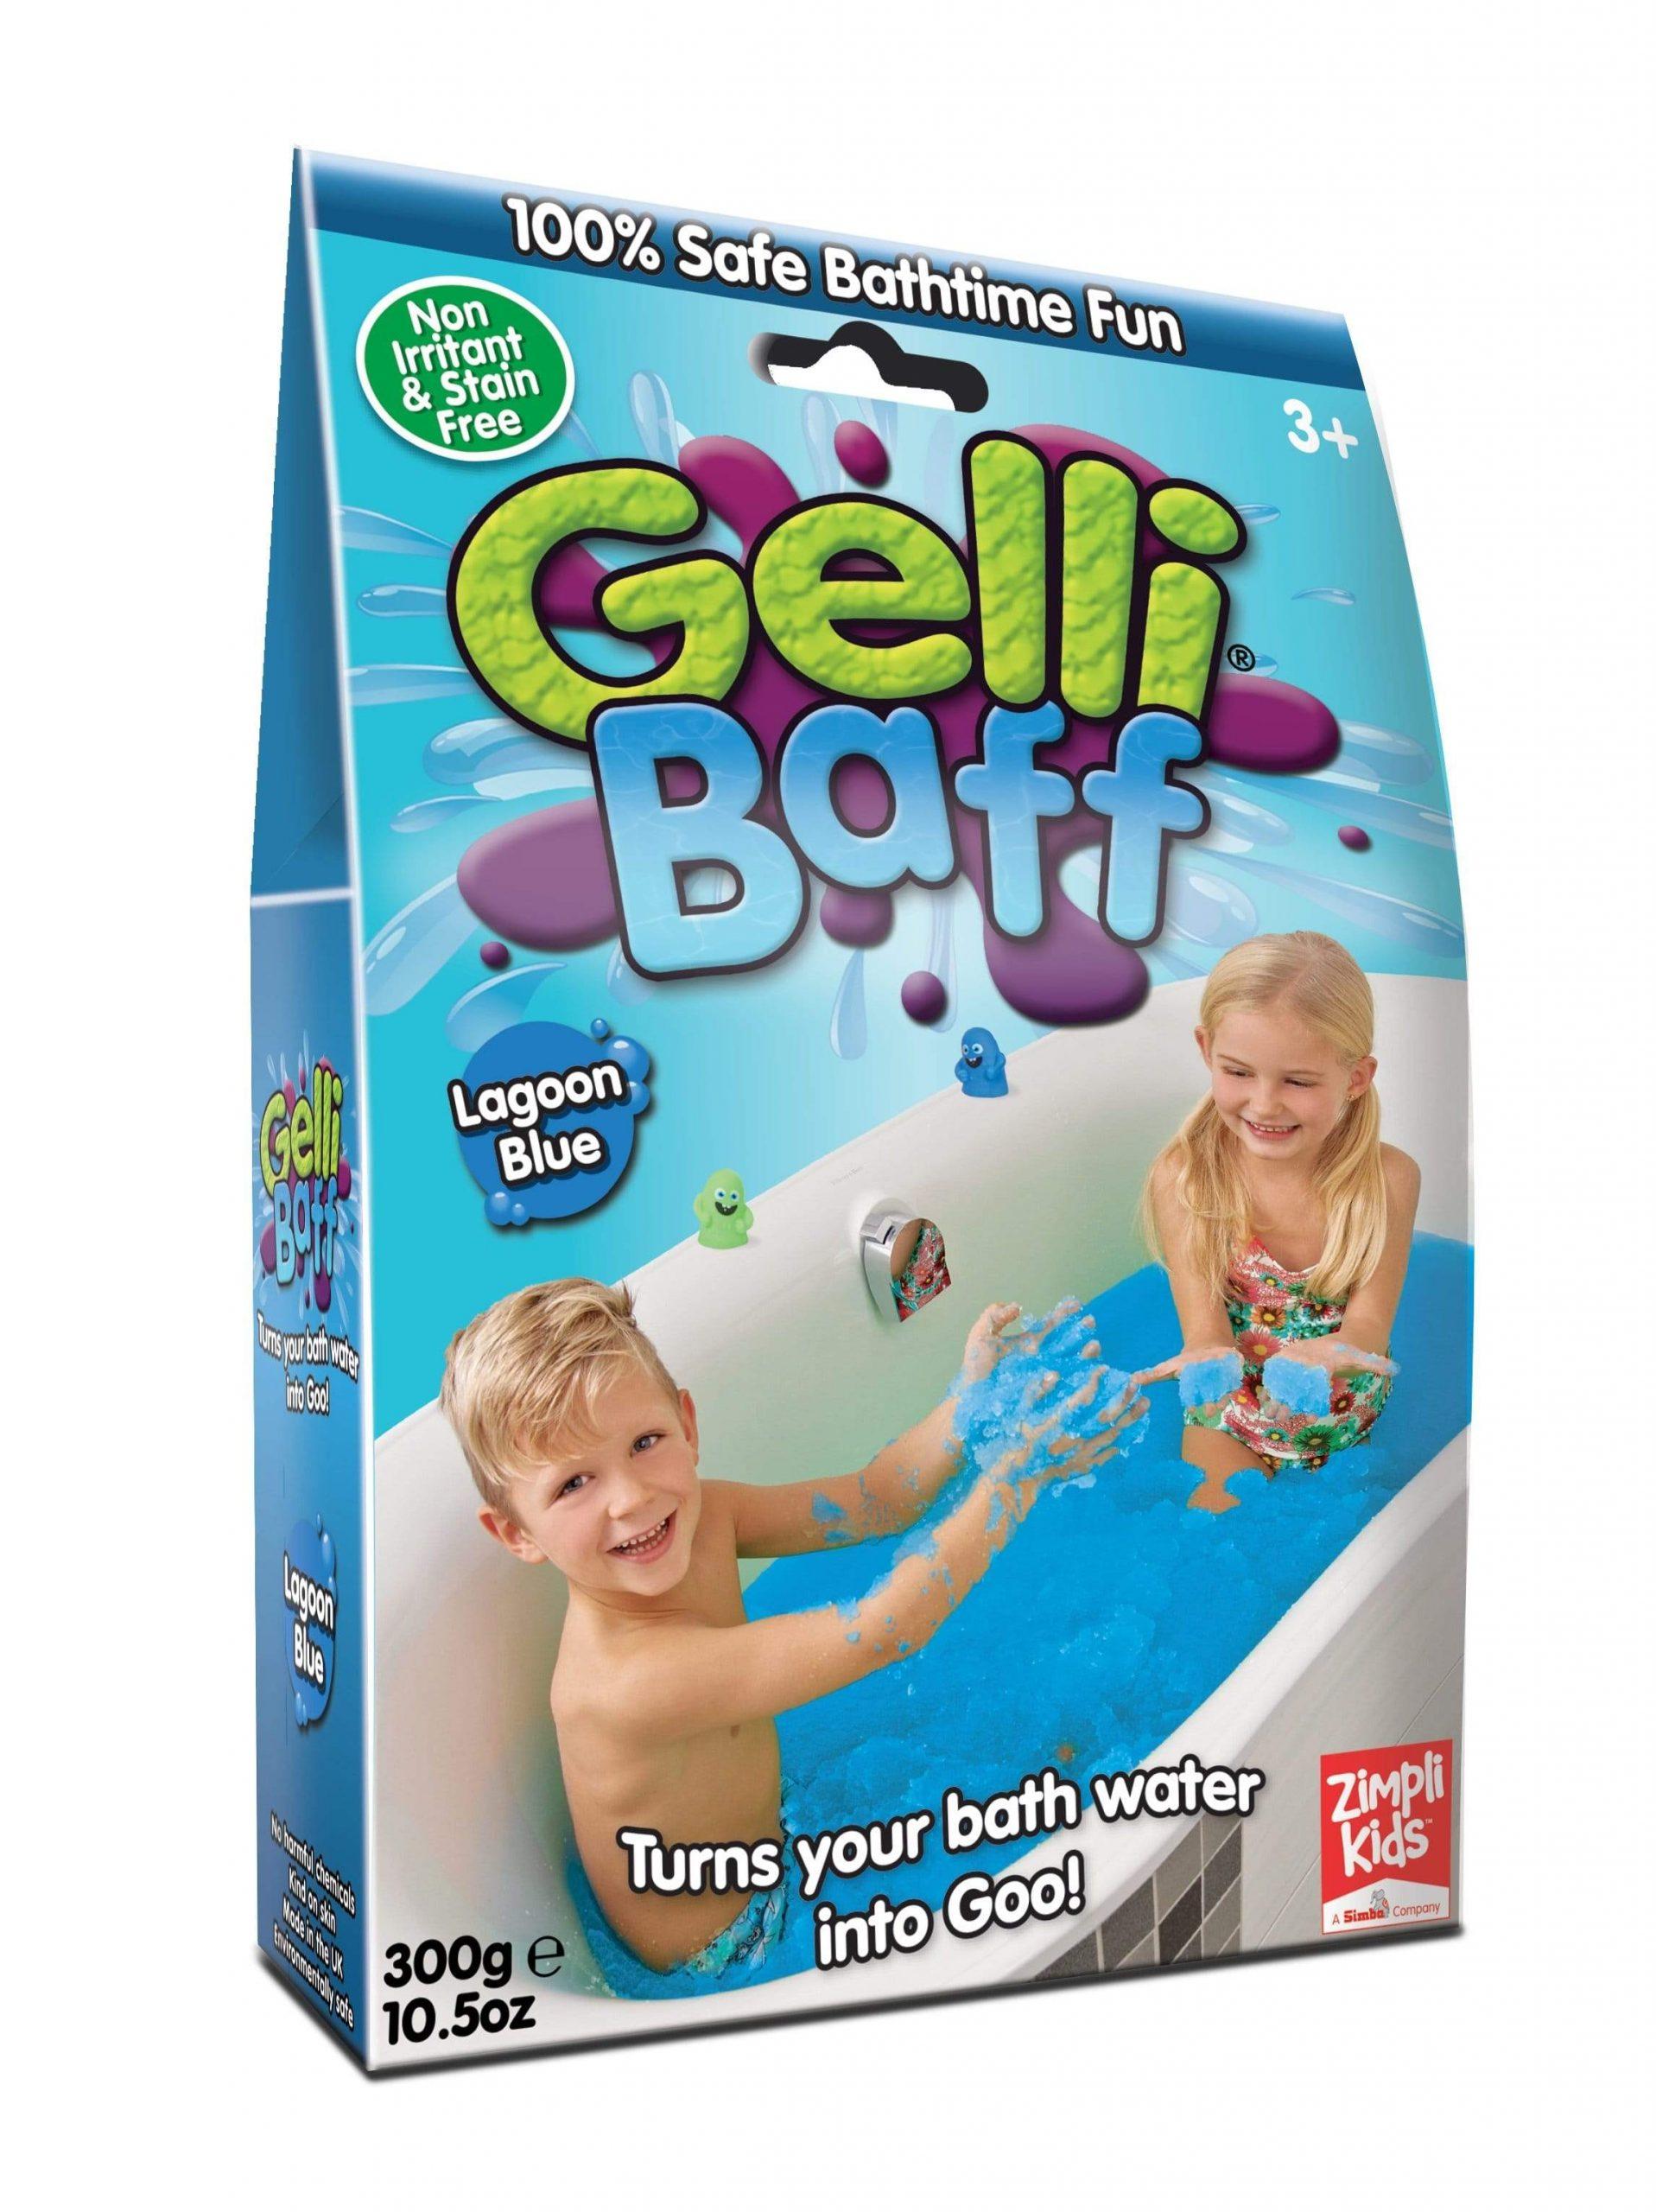 لعبة جيلي باف أزرق 300 جرام glibbi-Zimpli kids - Gelli Baff